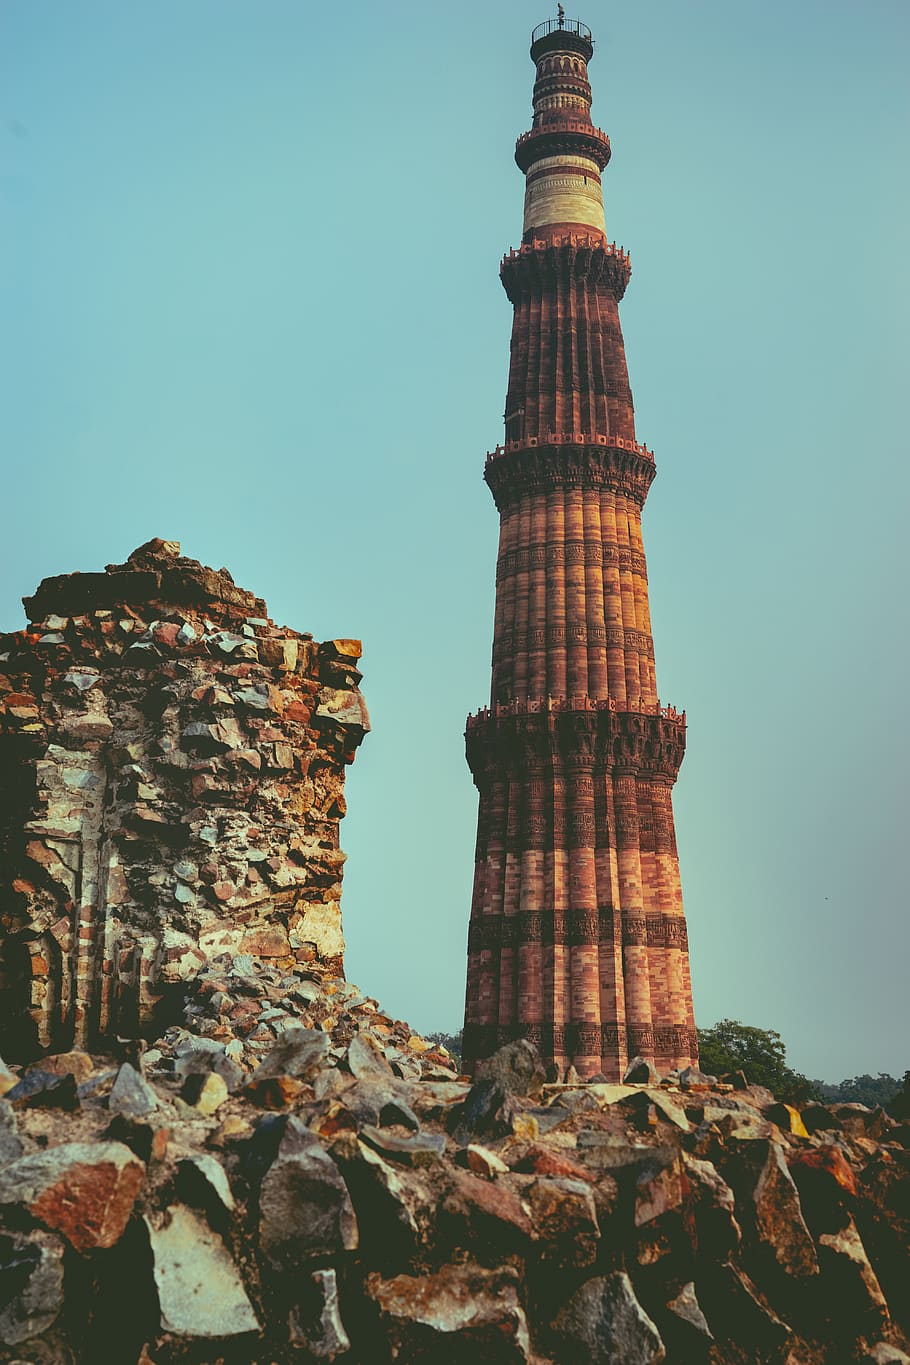 Monument, India, New Delhi, Qutub Minar, Building, - क़ुतुब मीनार , HD Wallpaper & Backgrounds